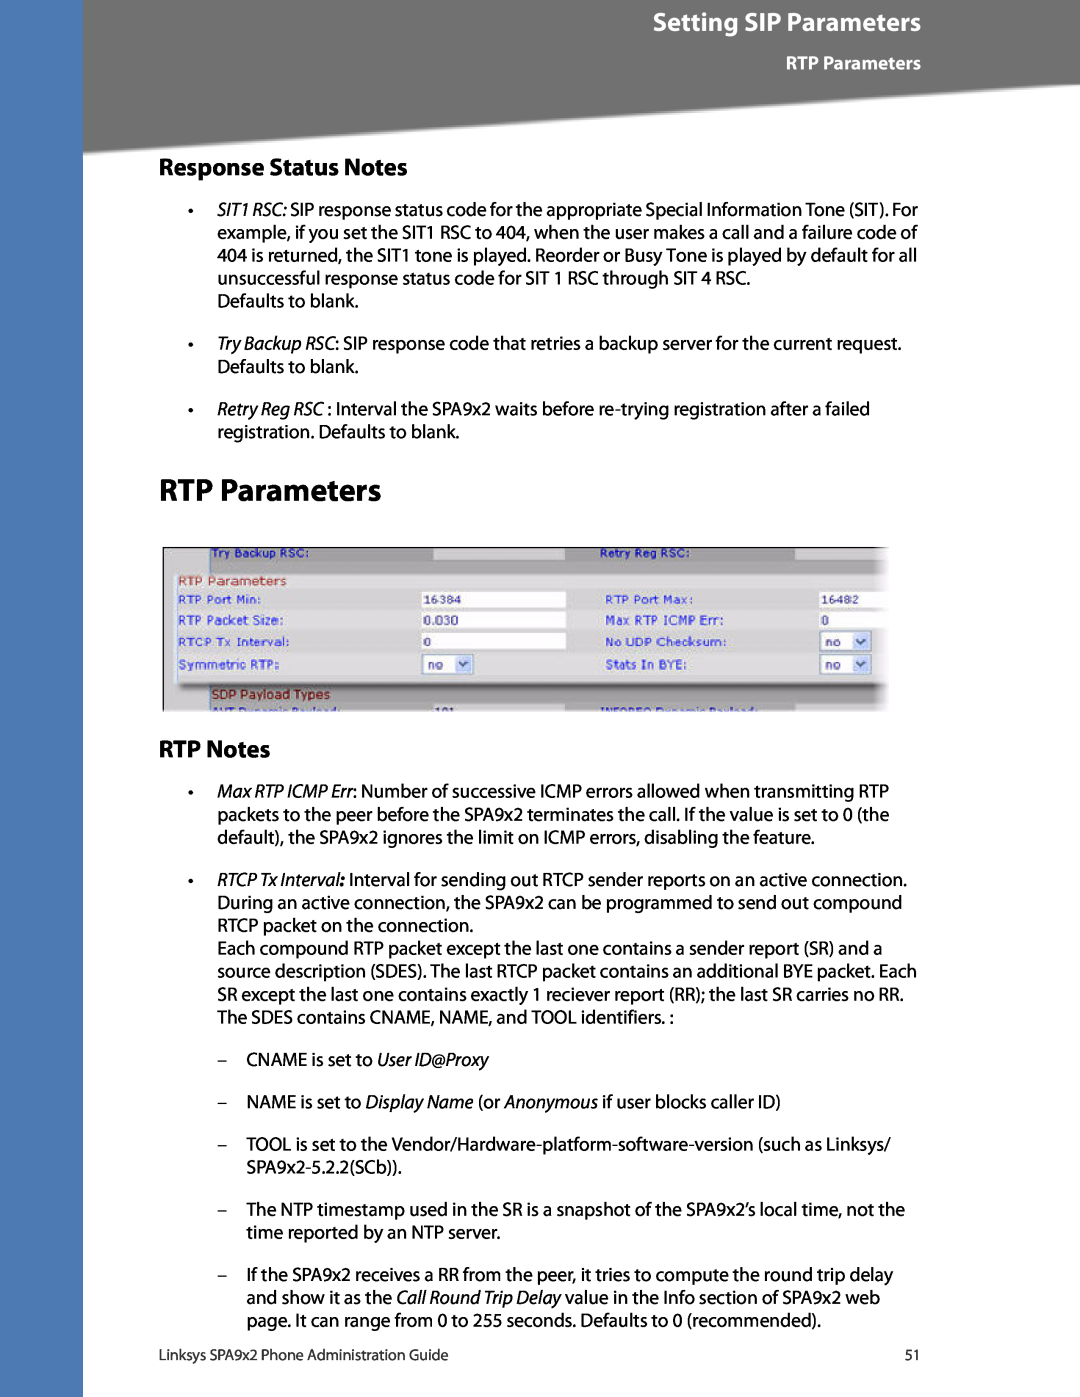 Linksys SPA932, SPA962, SPA942, SPA922 manual RTP Parameters, Response Status Notes, RTP Notes, Setting SIP Parameters 